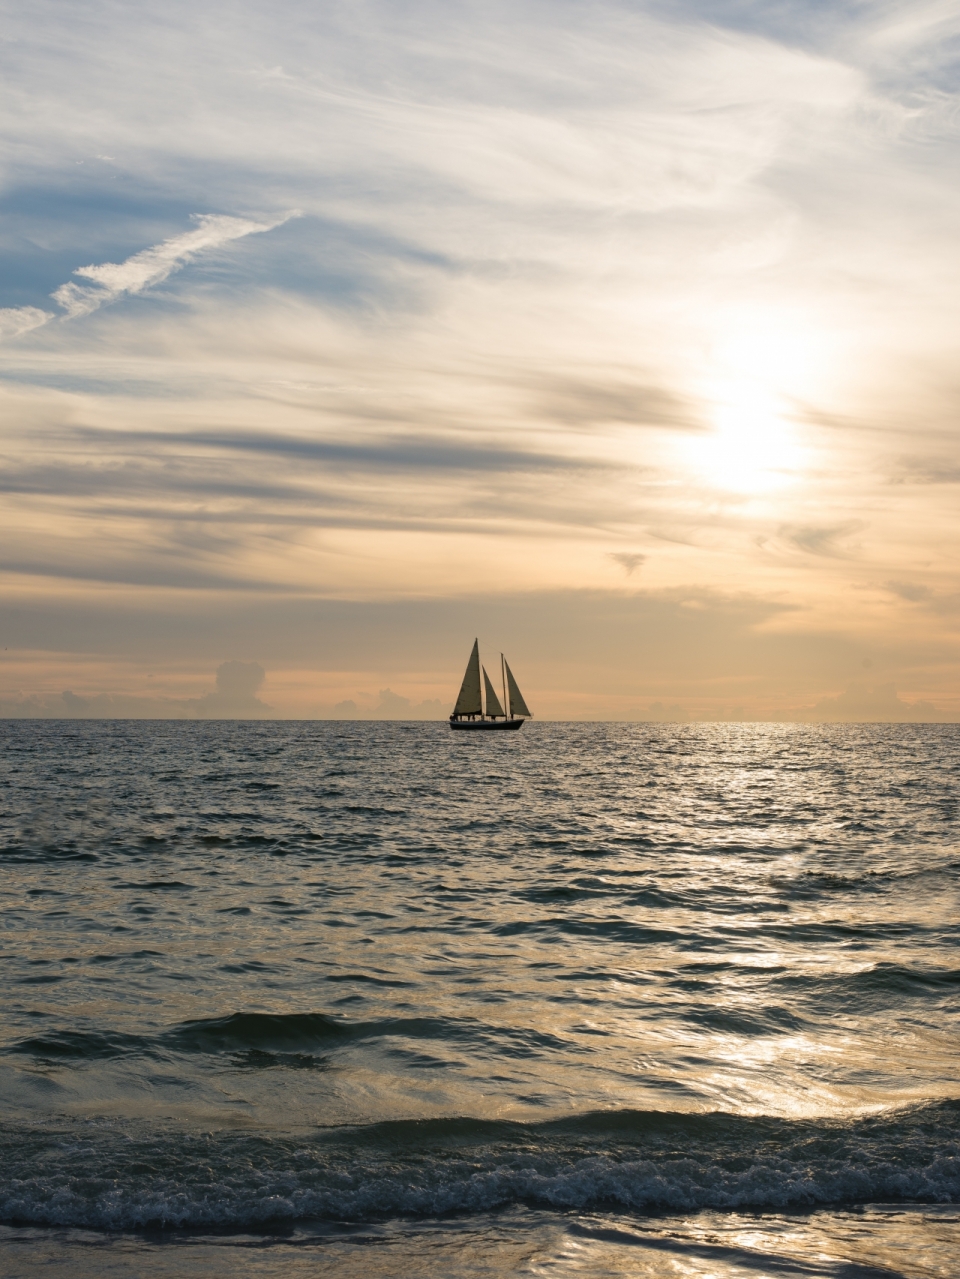 视线尽头海面航行帆船天空夕阳美景